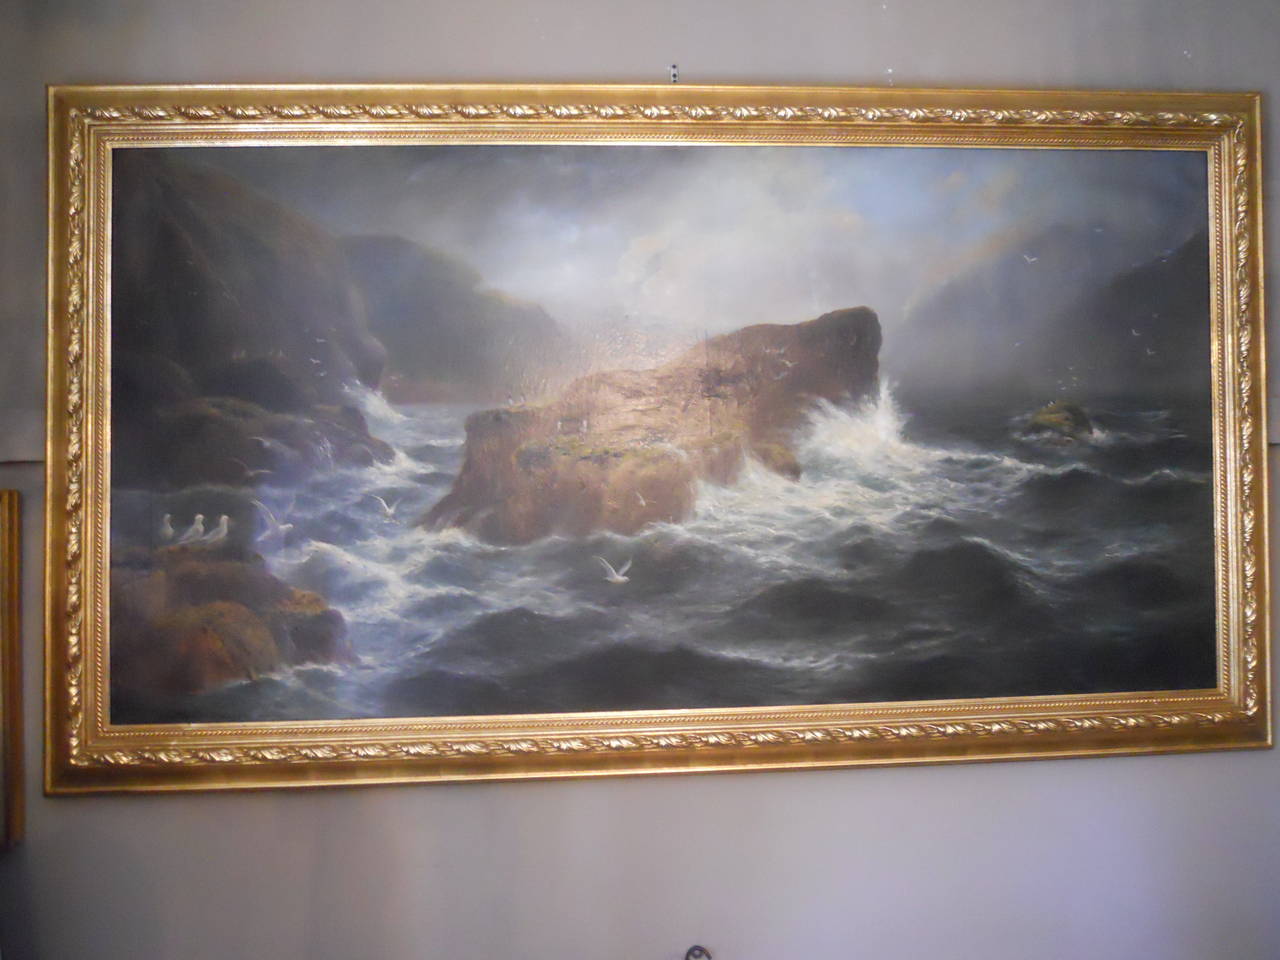 Étonnante peinture à l'huile sur toile de Daniel Sherrin du 19e siècle représentant un paysage marin.

Mesure avec le cadre 48